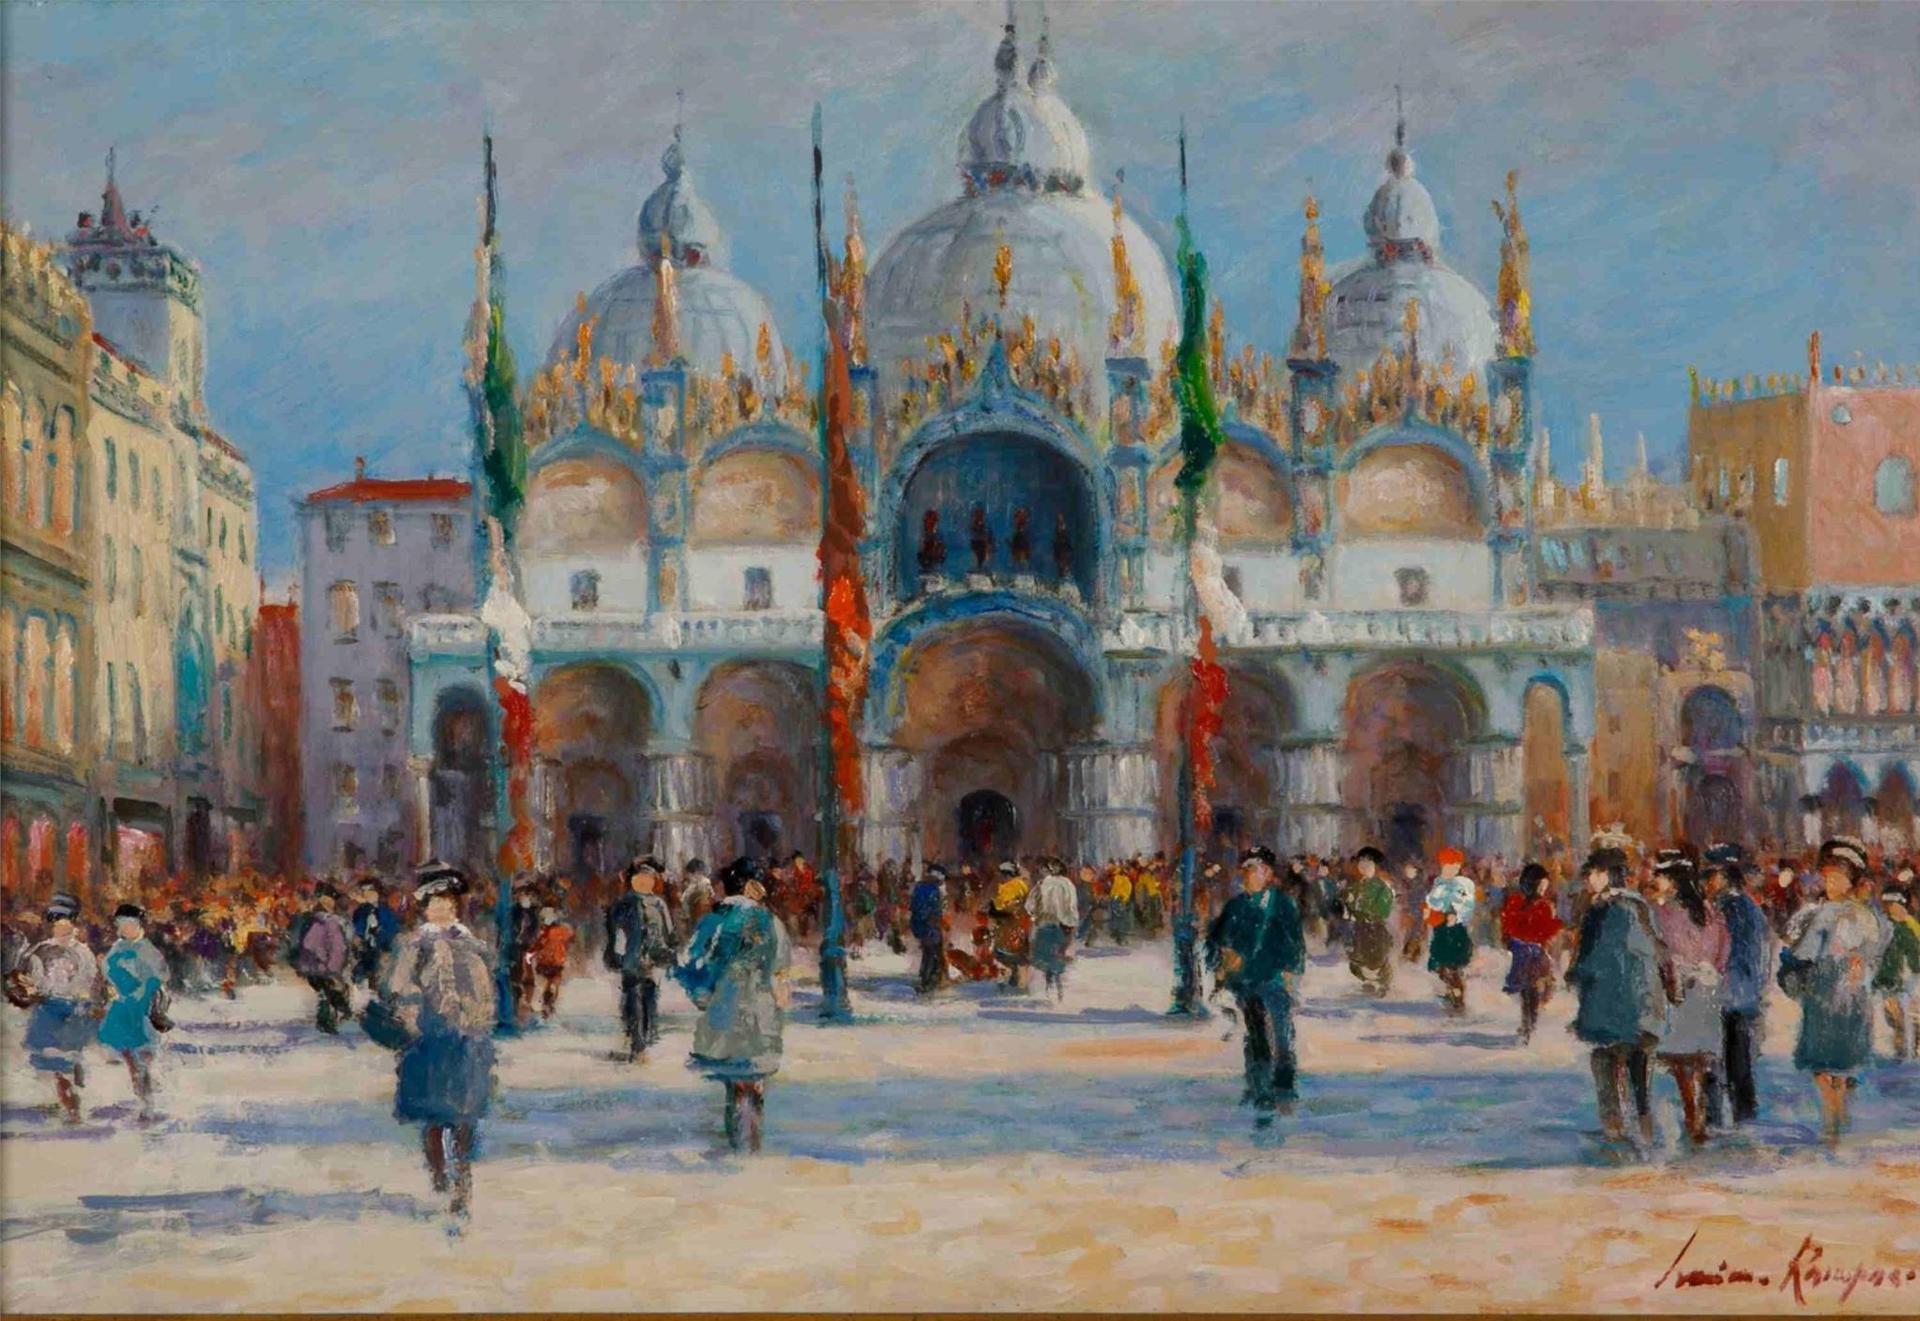 Luciano Rampazo (1936) - St. Mark's Basilica, Venice